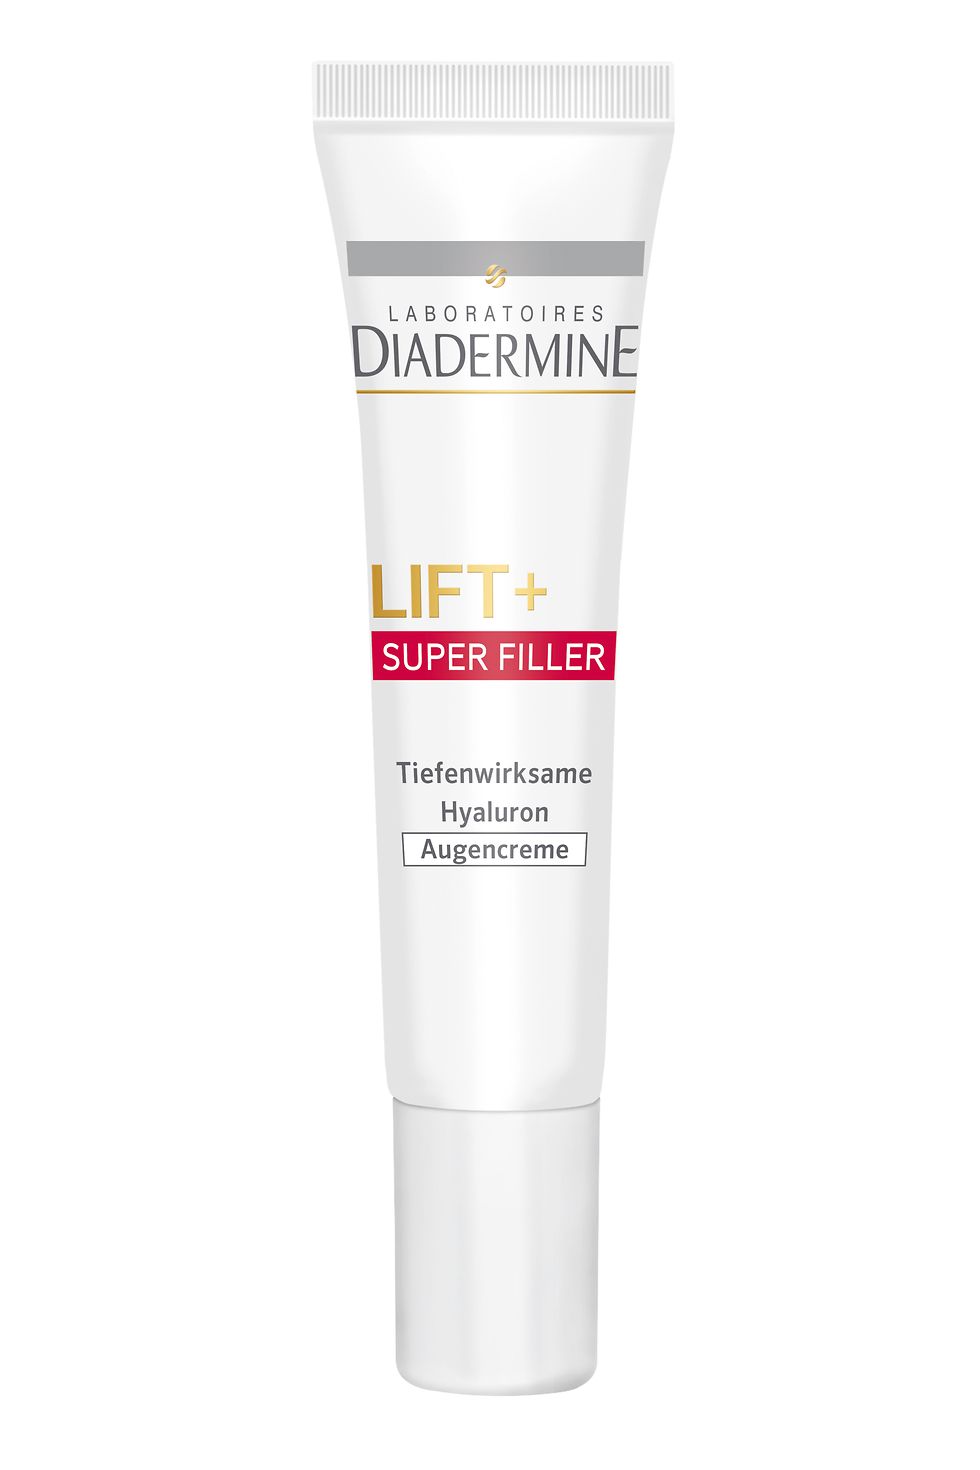 Diadermine Lift+ Super Filler Augencreme